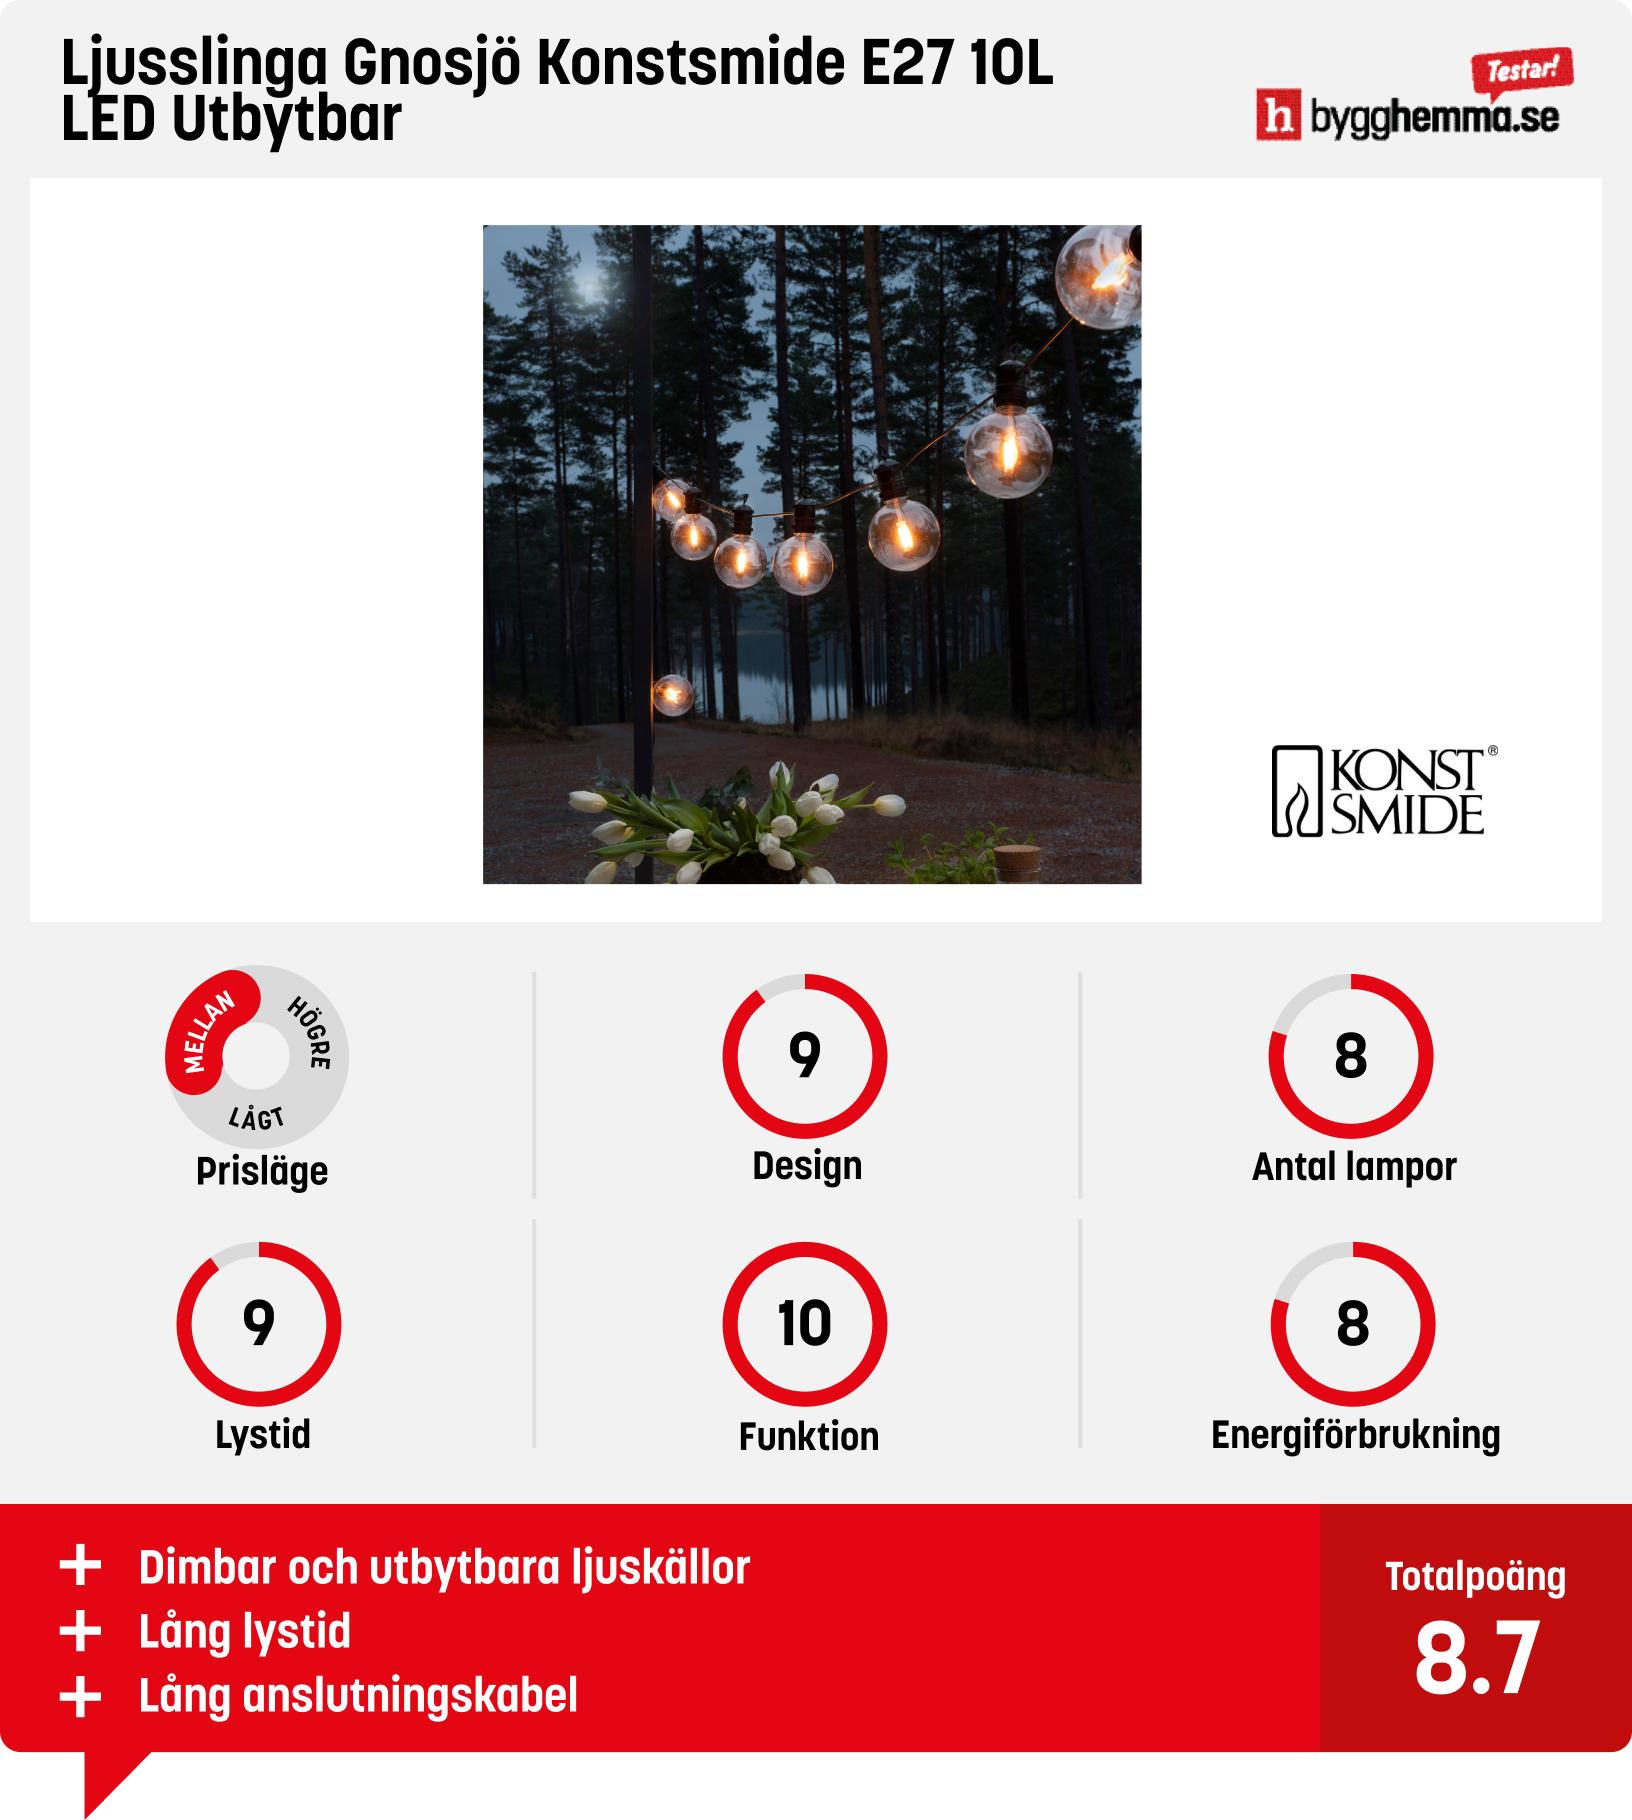 Bästa ljusslingan utomhus - Ljusslinga Gnosjö Konstsmide E27 10L LED Utbytbar